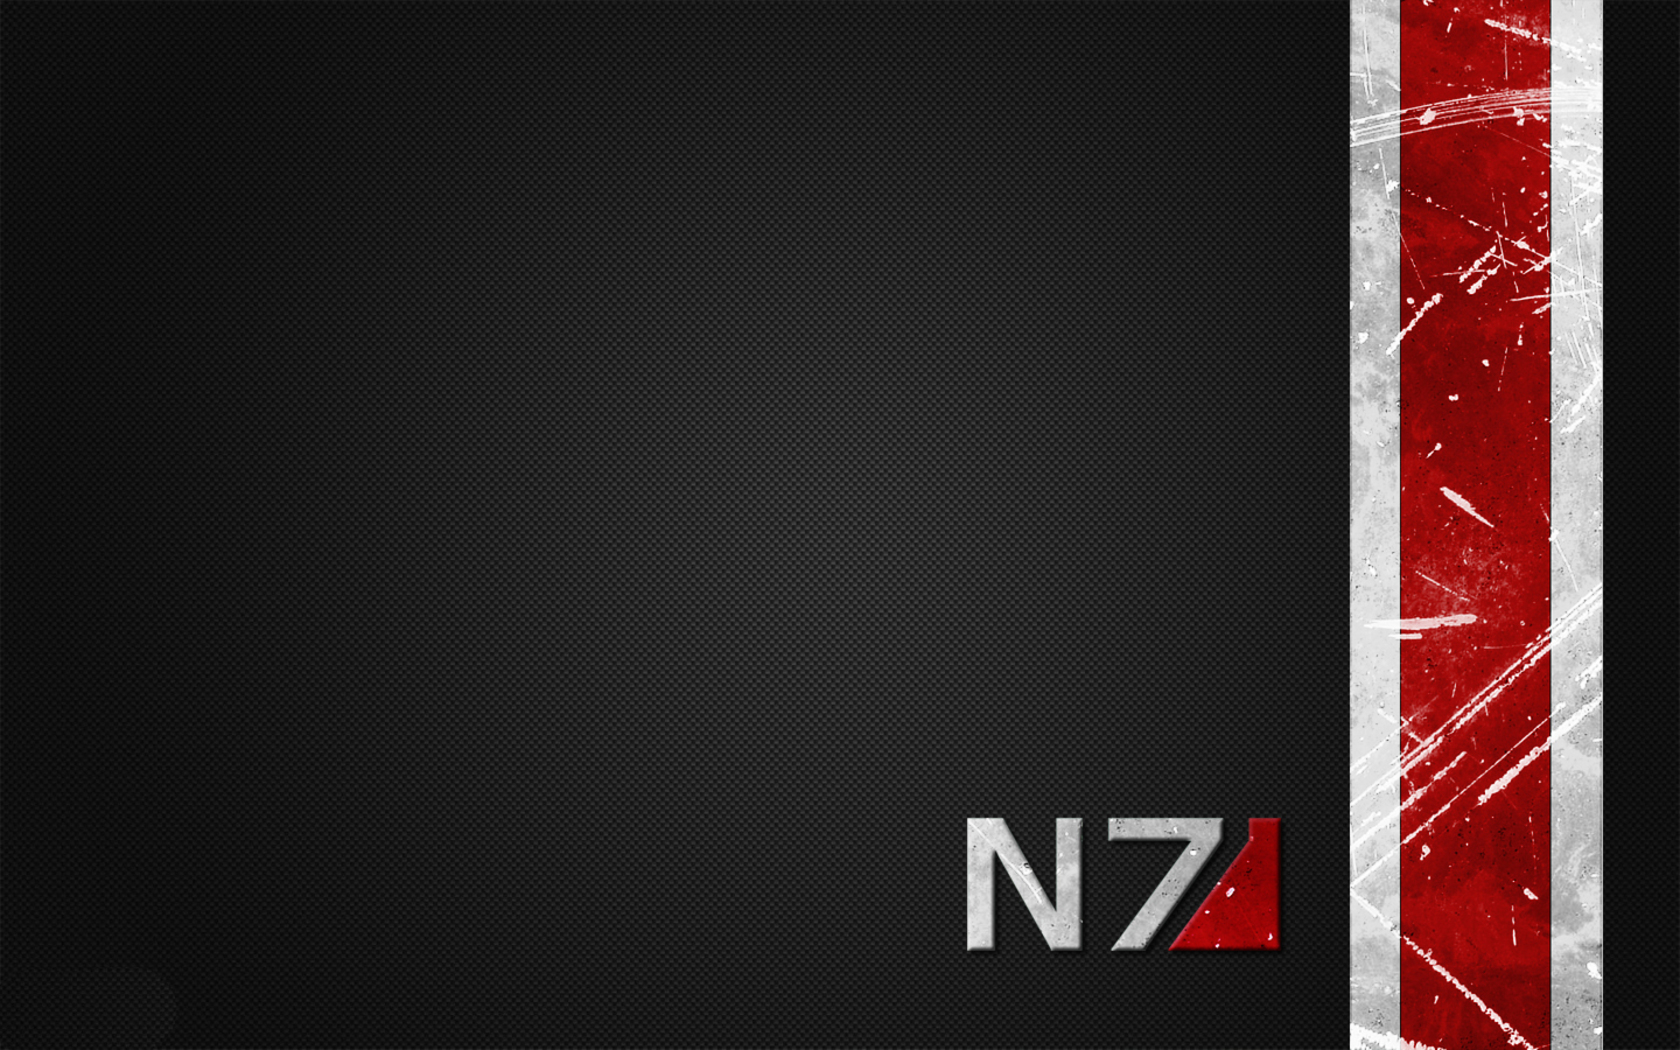 N7 Artwork Video Games Mass Effect 1680x1050